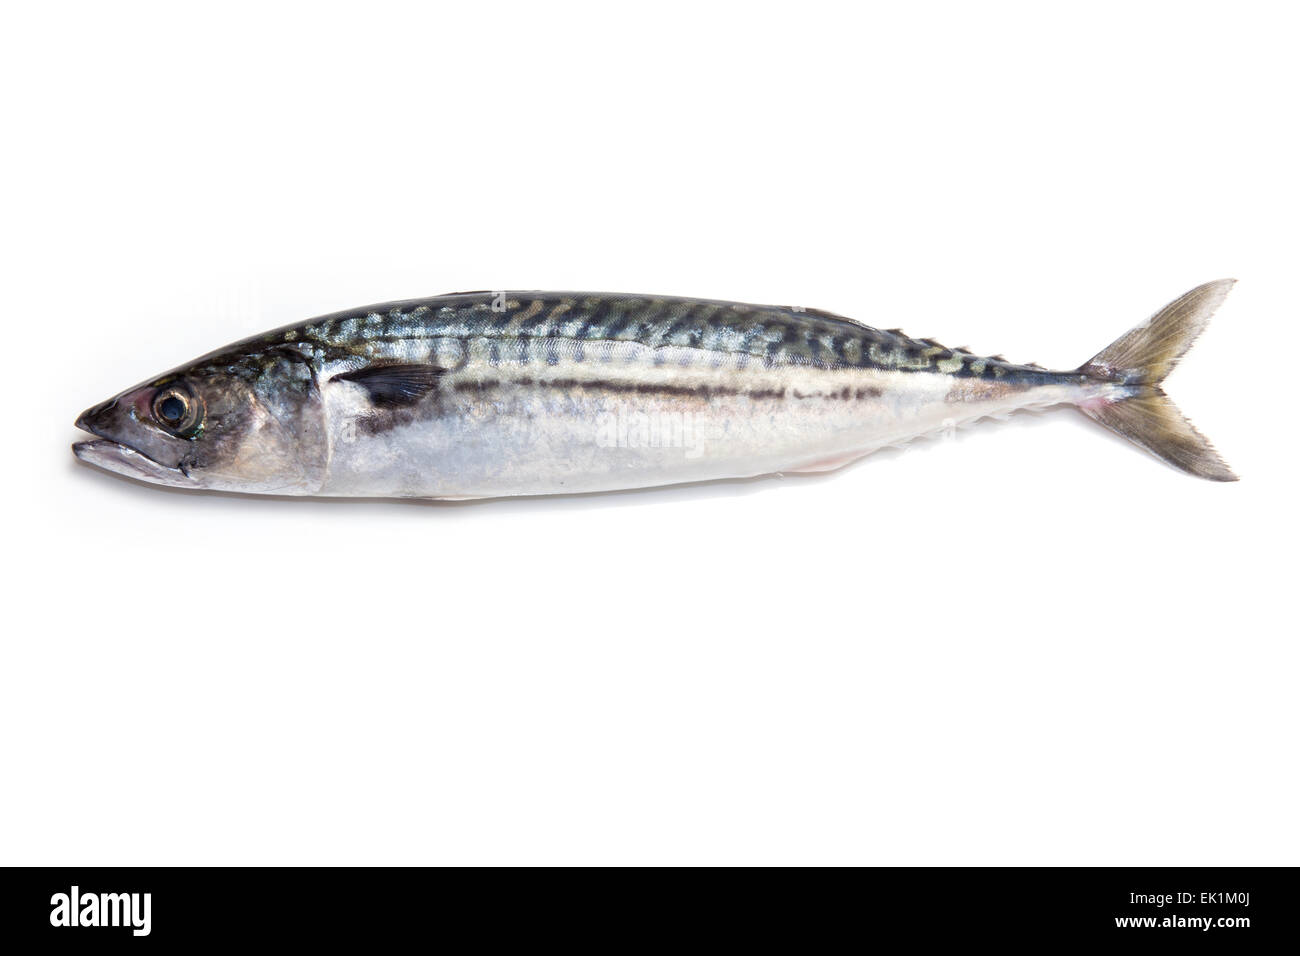 Ganze atlantische Makrele (Scomber scombrus) Fisch isoliert auf einem weißen studio Hintergrund. Stockfoto